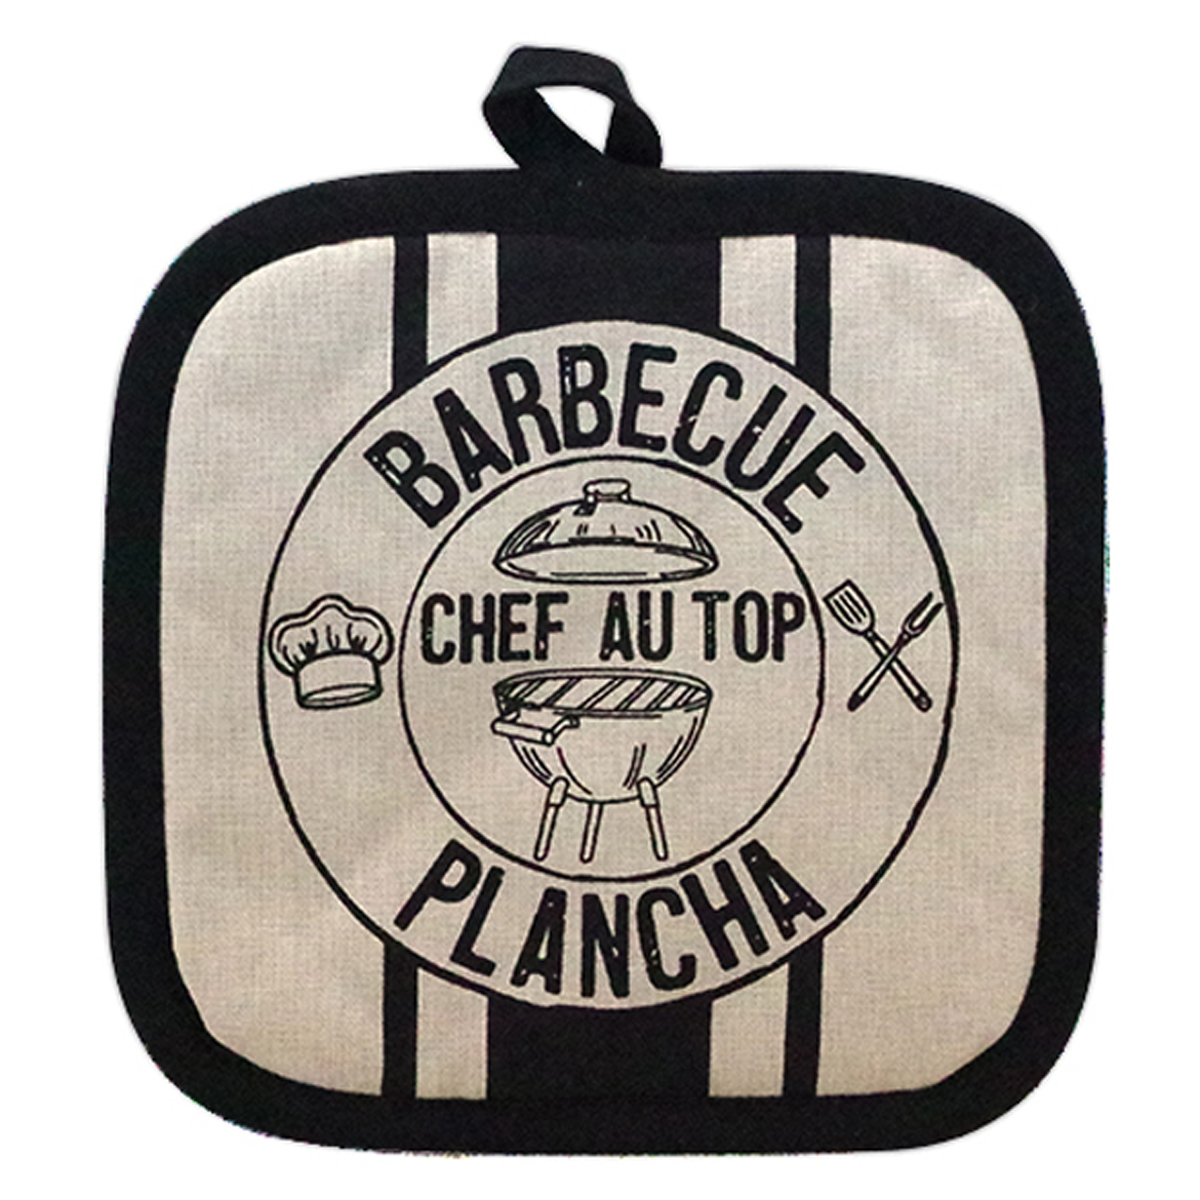 Manique coton \'Barbecue Plancha\' beige noir (chef au top) - 20x20 cm - [R6603]